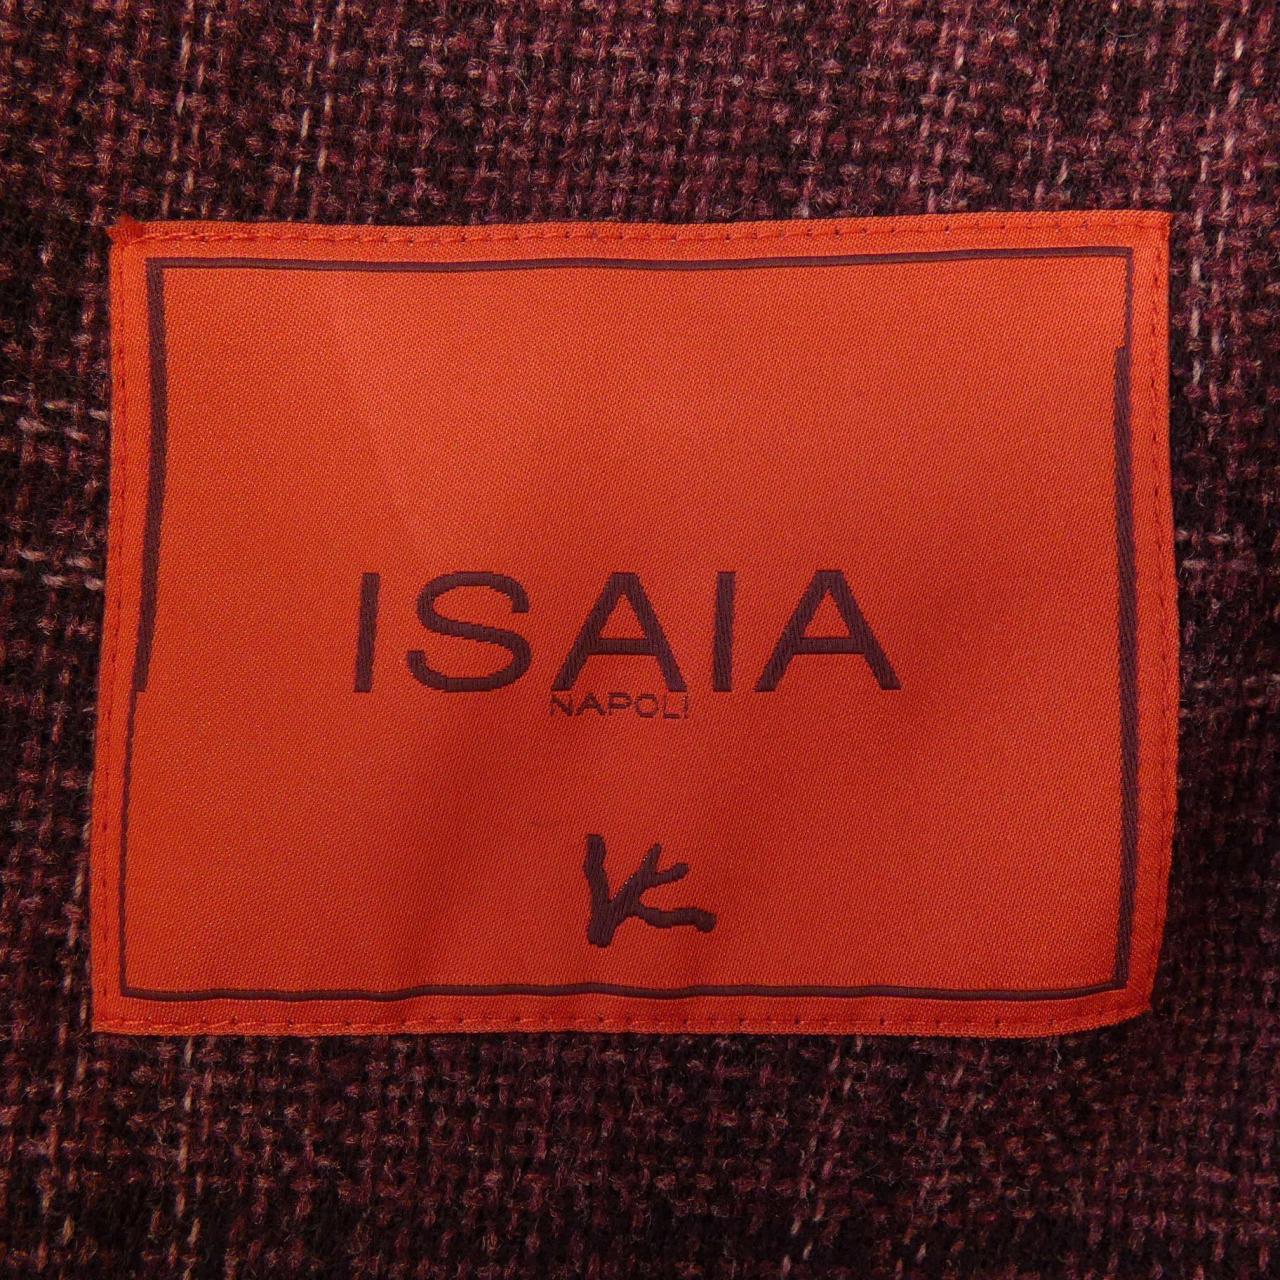 Isaiah ISAIA tailored jacket